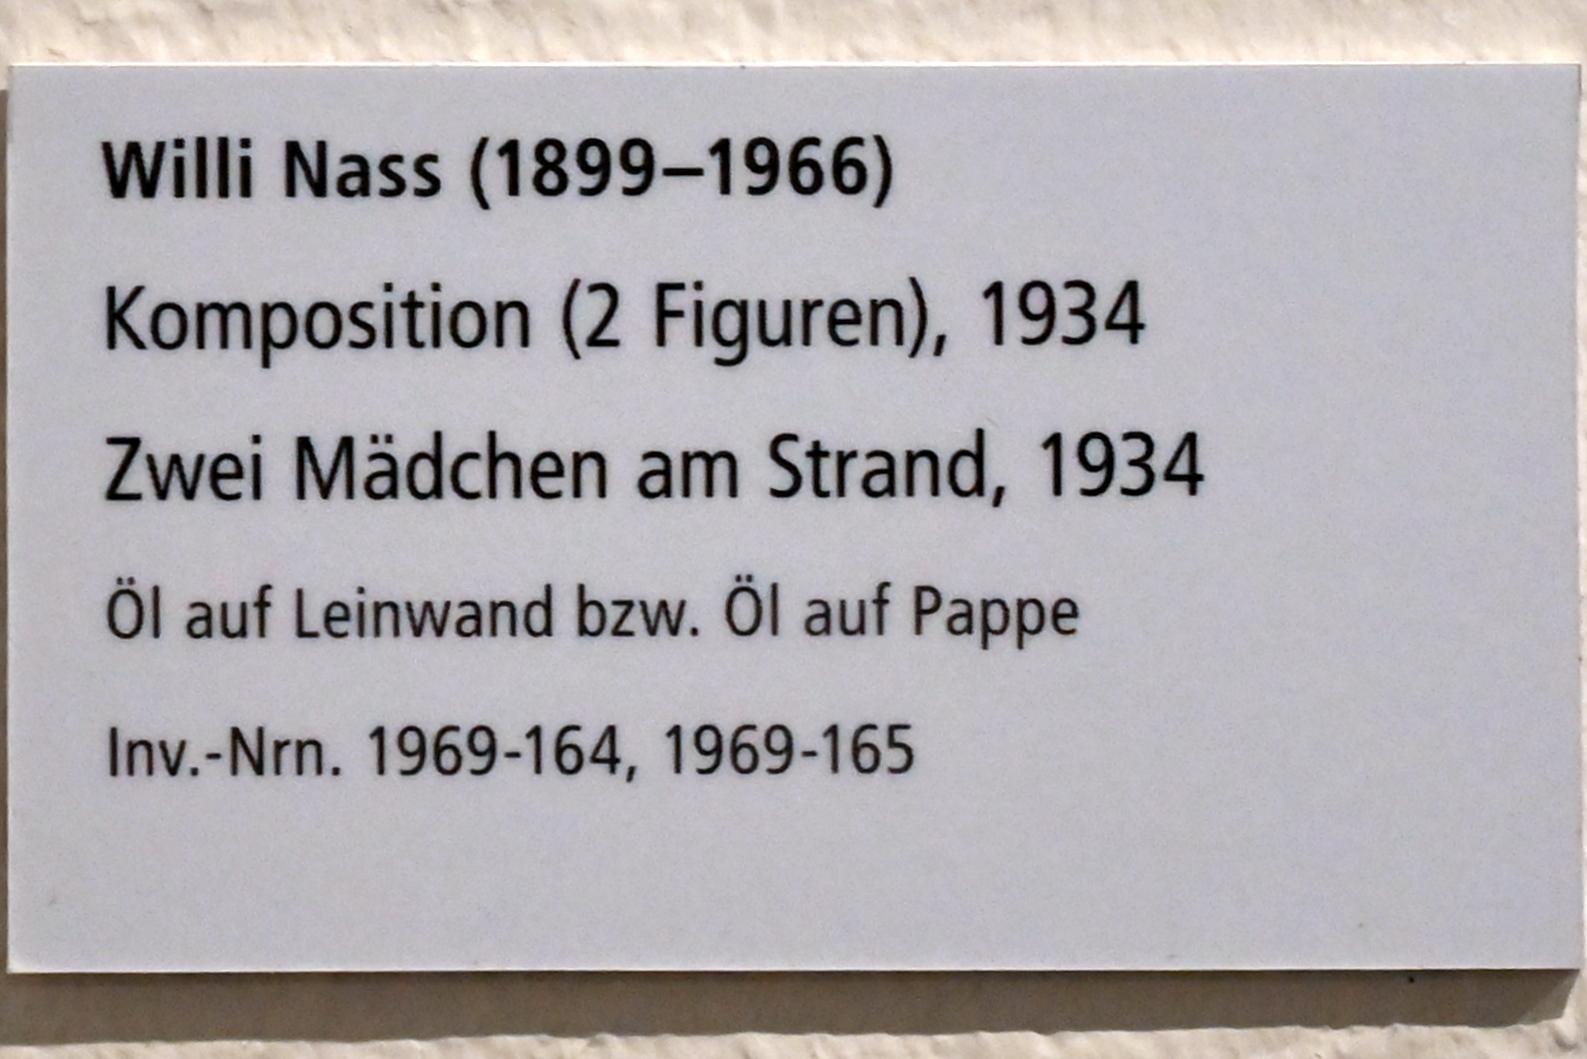 Willi Nass (1934), Komposition (2 Figuren), Schleswig, Landesmuseum für Kunst und Kulturgeschichte, Galerie der Klassischen Moderne, 1934, Bild 2/2